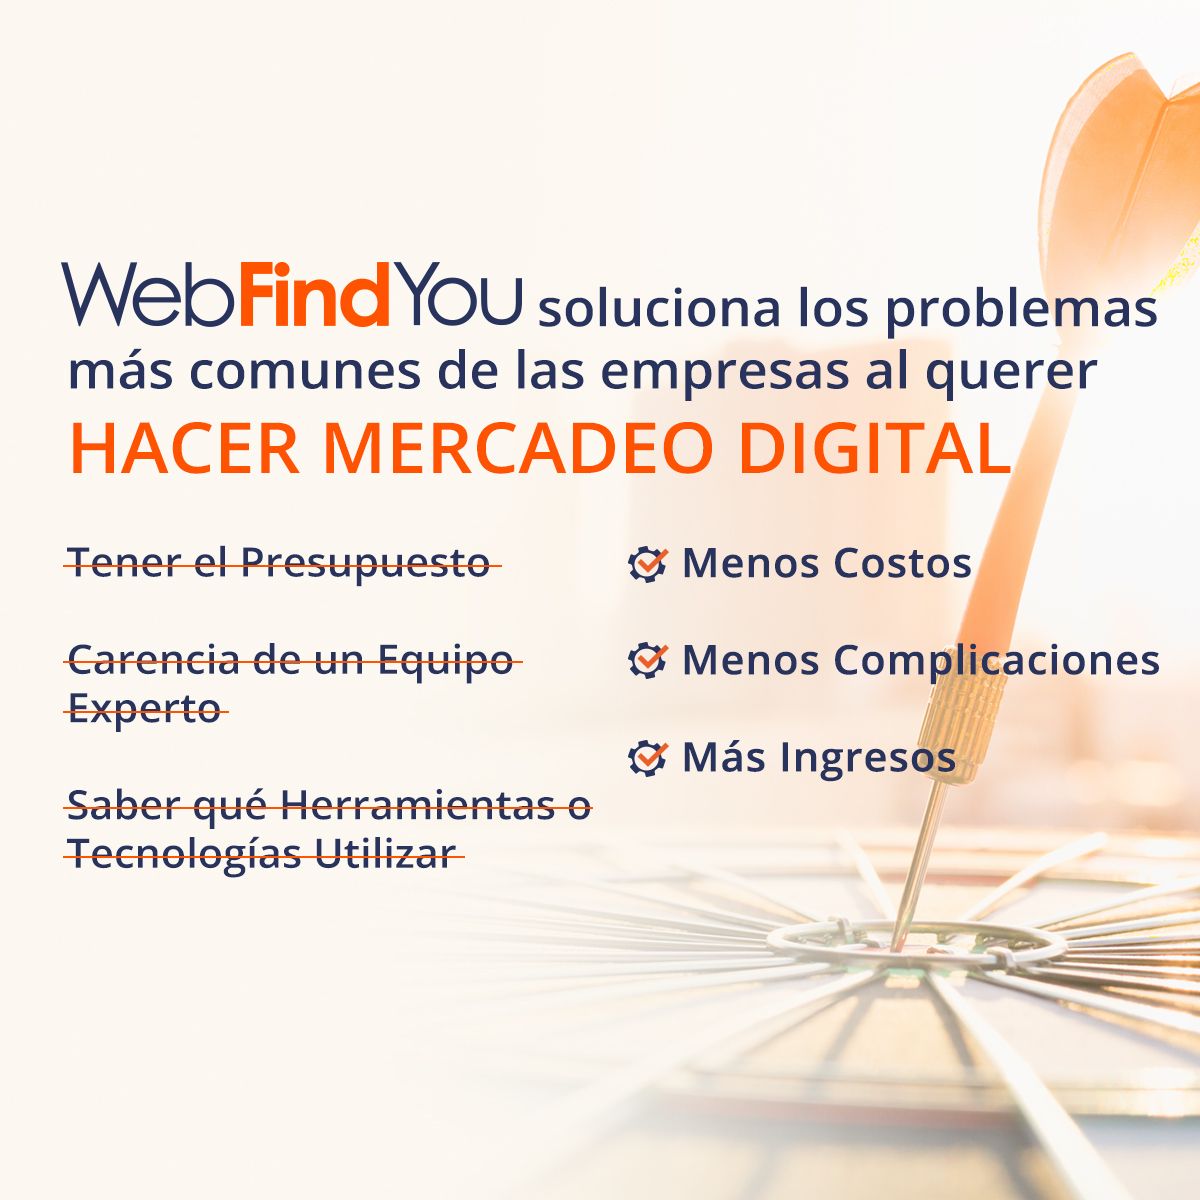 WEBFINDYOU SOLUCIONA LOS PROBLEMAS MÁS COMUNES DE LAS EMPRESAS AL QUERER HACER MERCADEO DIGITAL